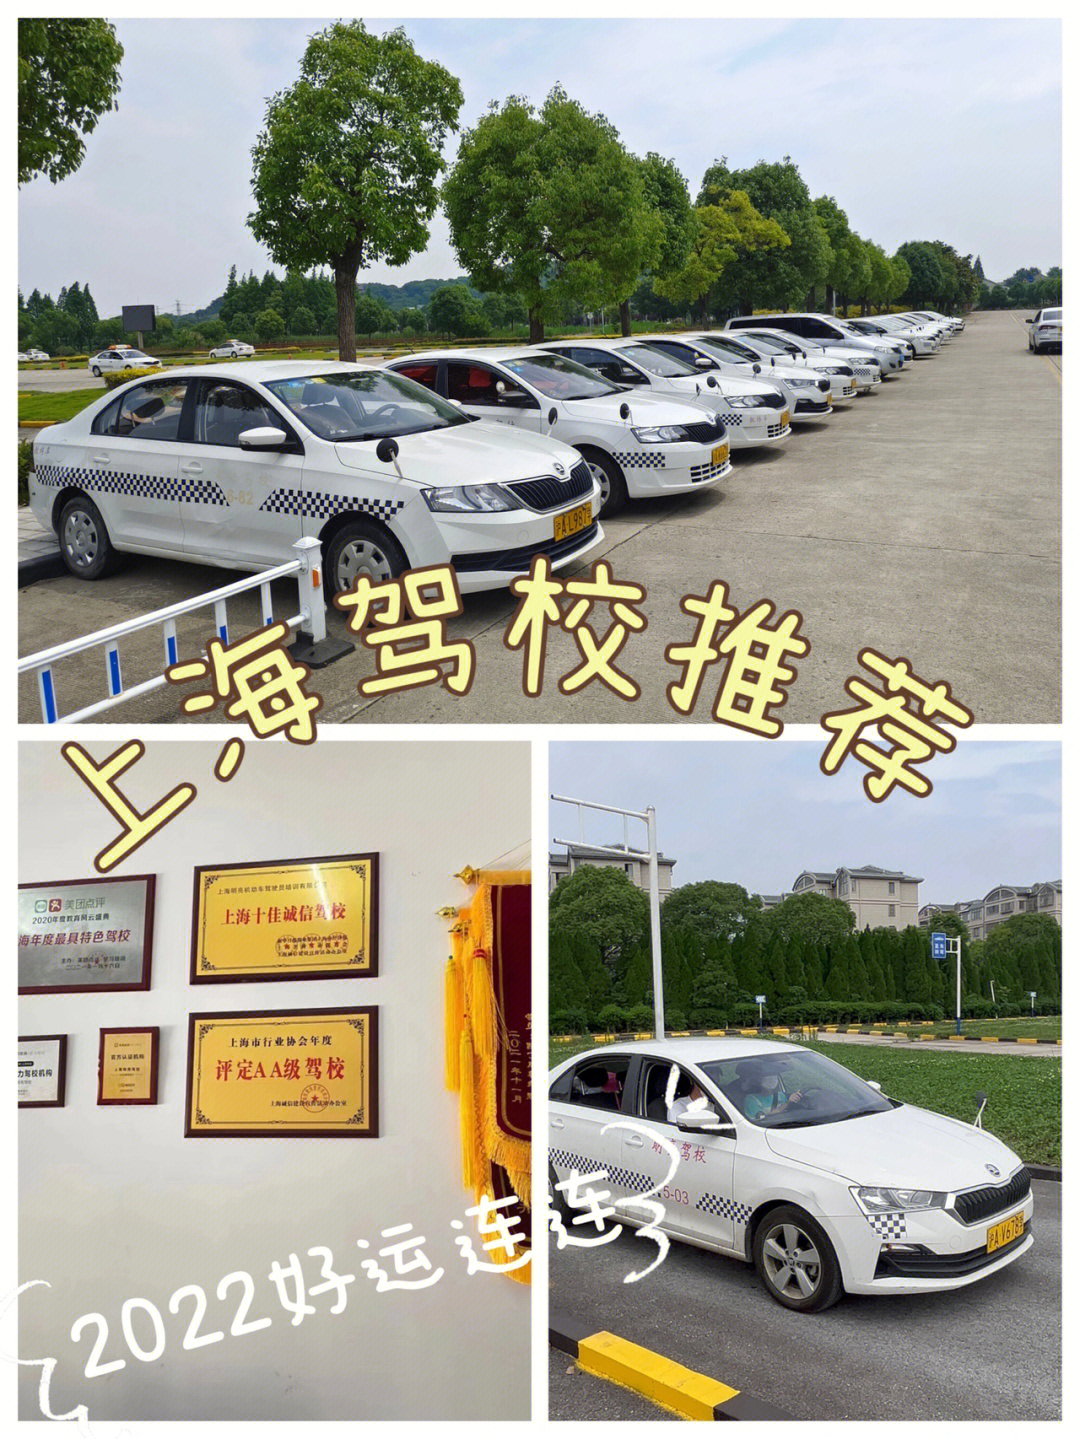 上海驾校上海学车考驾照推荐